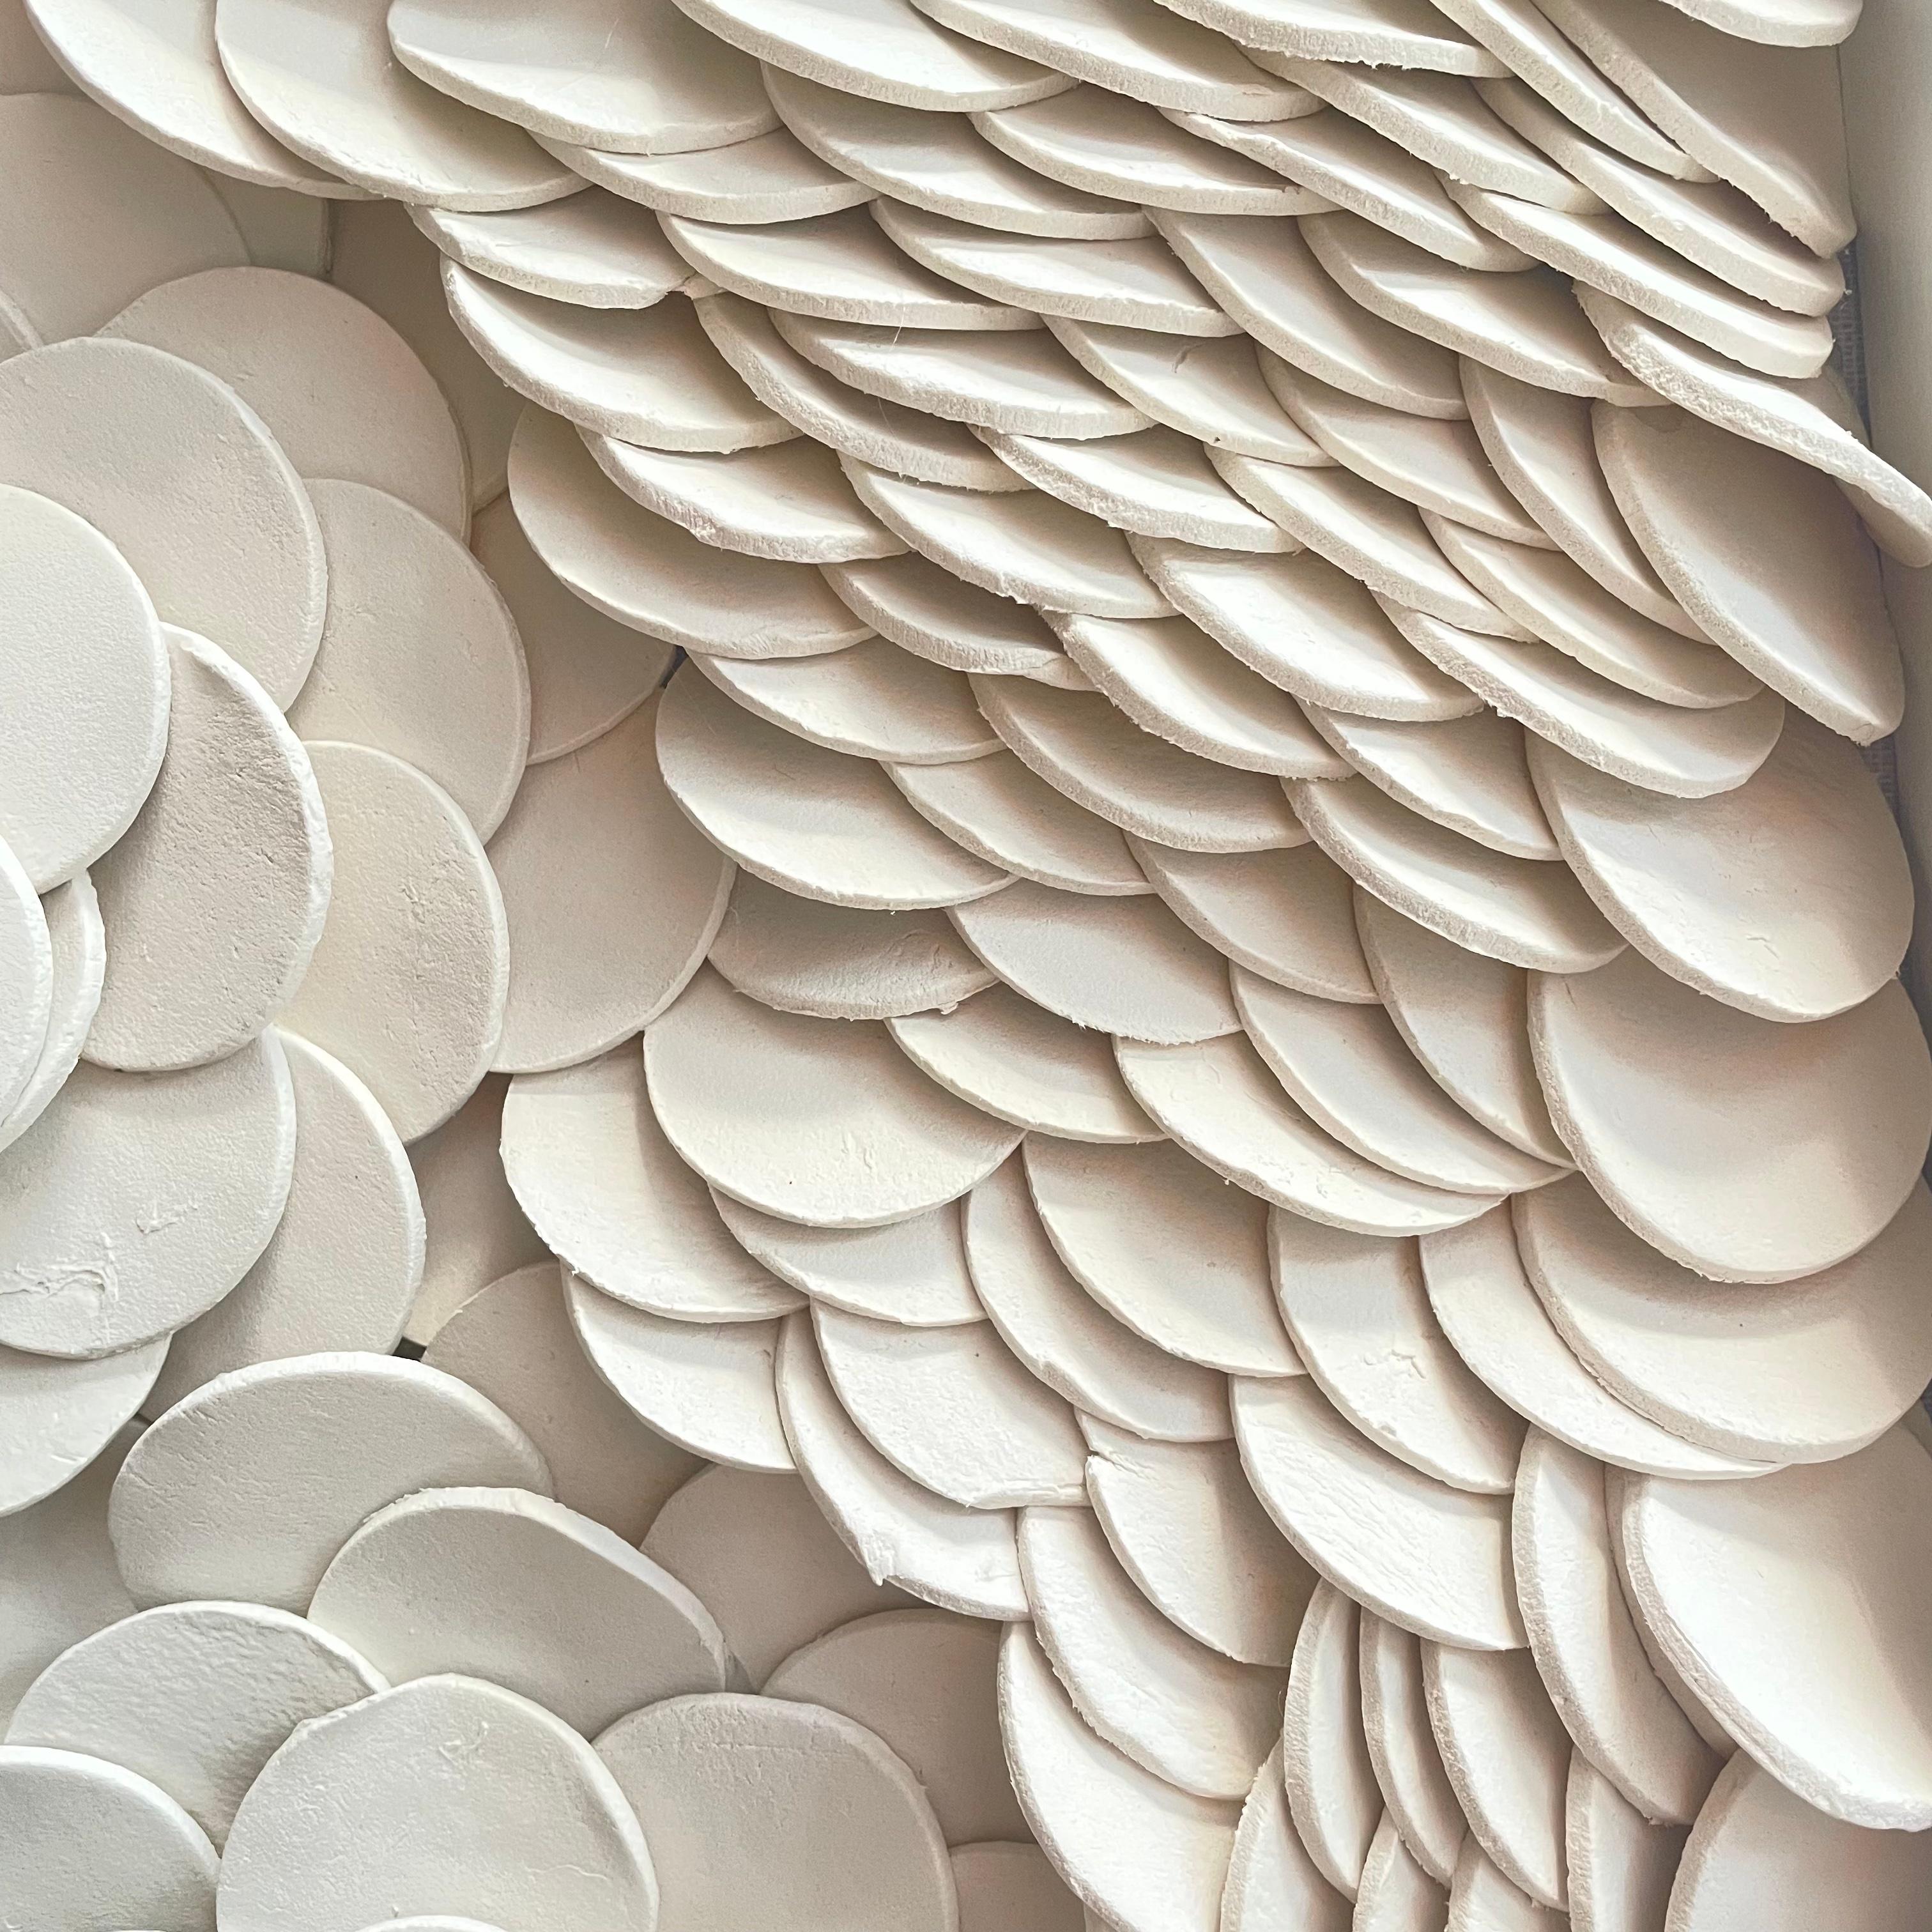 Lapis 270  - composition murale en cramique blanche  motifs floraux gomtriques abstraits en relief - Contemporain Mixed Media Art par Marie Laforey